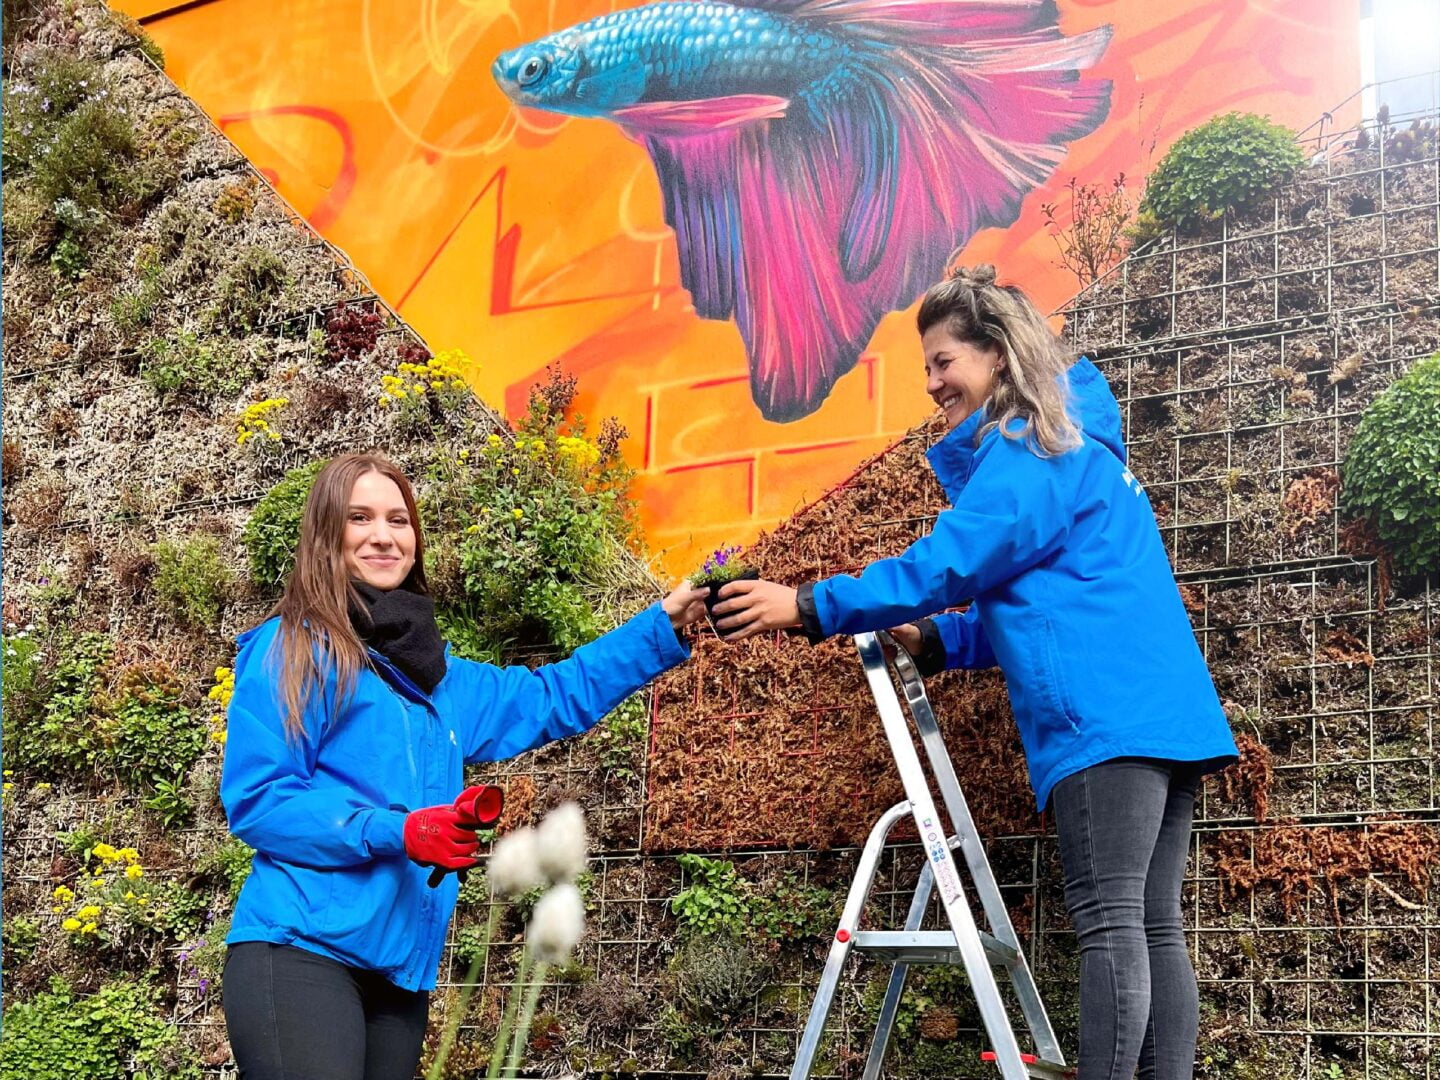 zwei Frauen in blauen Jacken stehen an einer Wand mit Pflanzen und Graffiti, eine davon auf einer Leiter